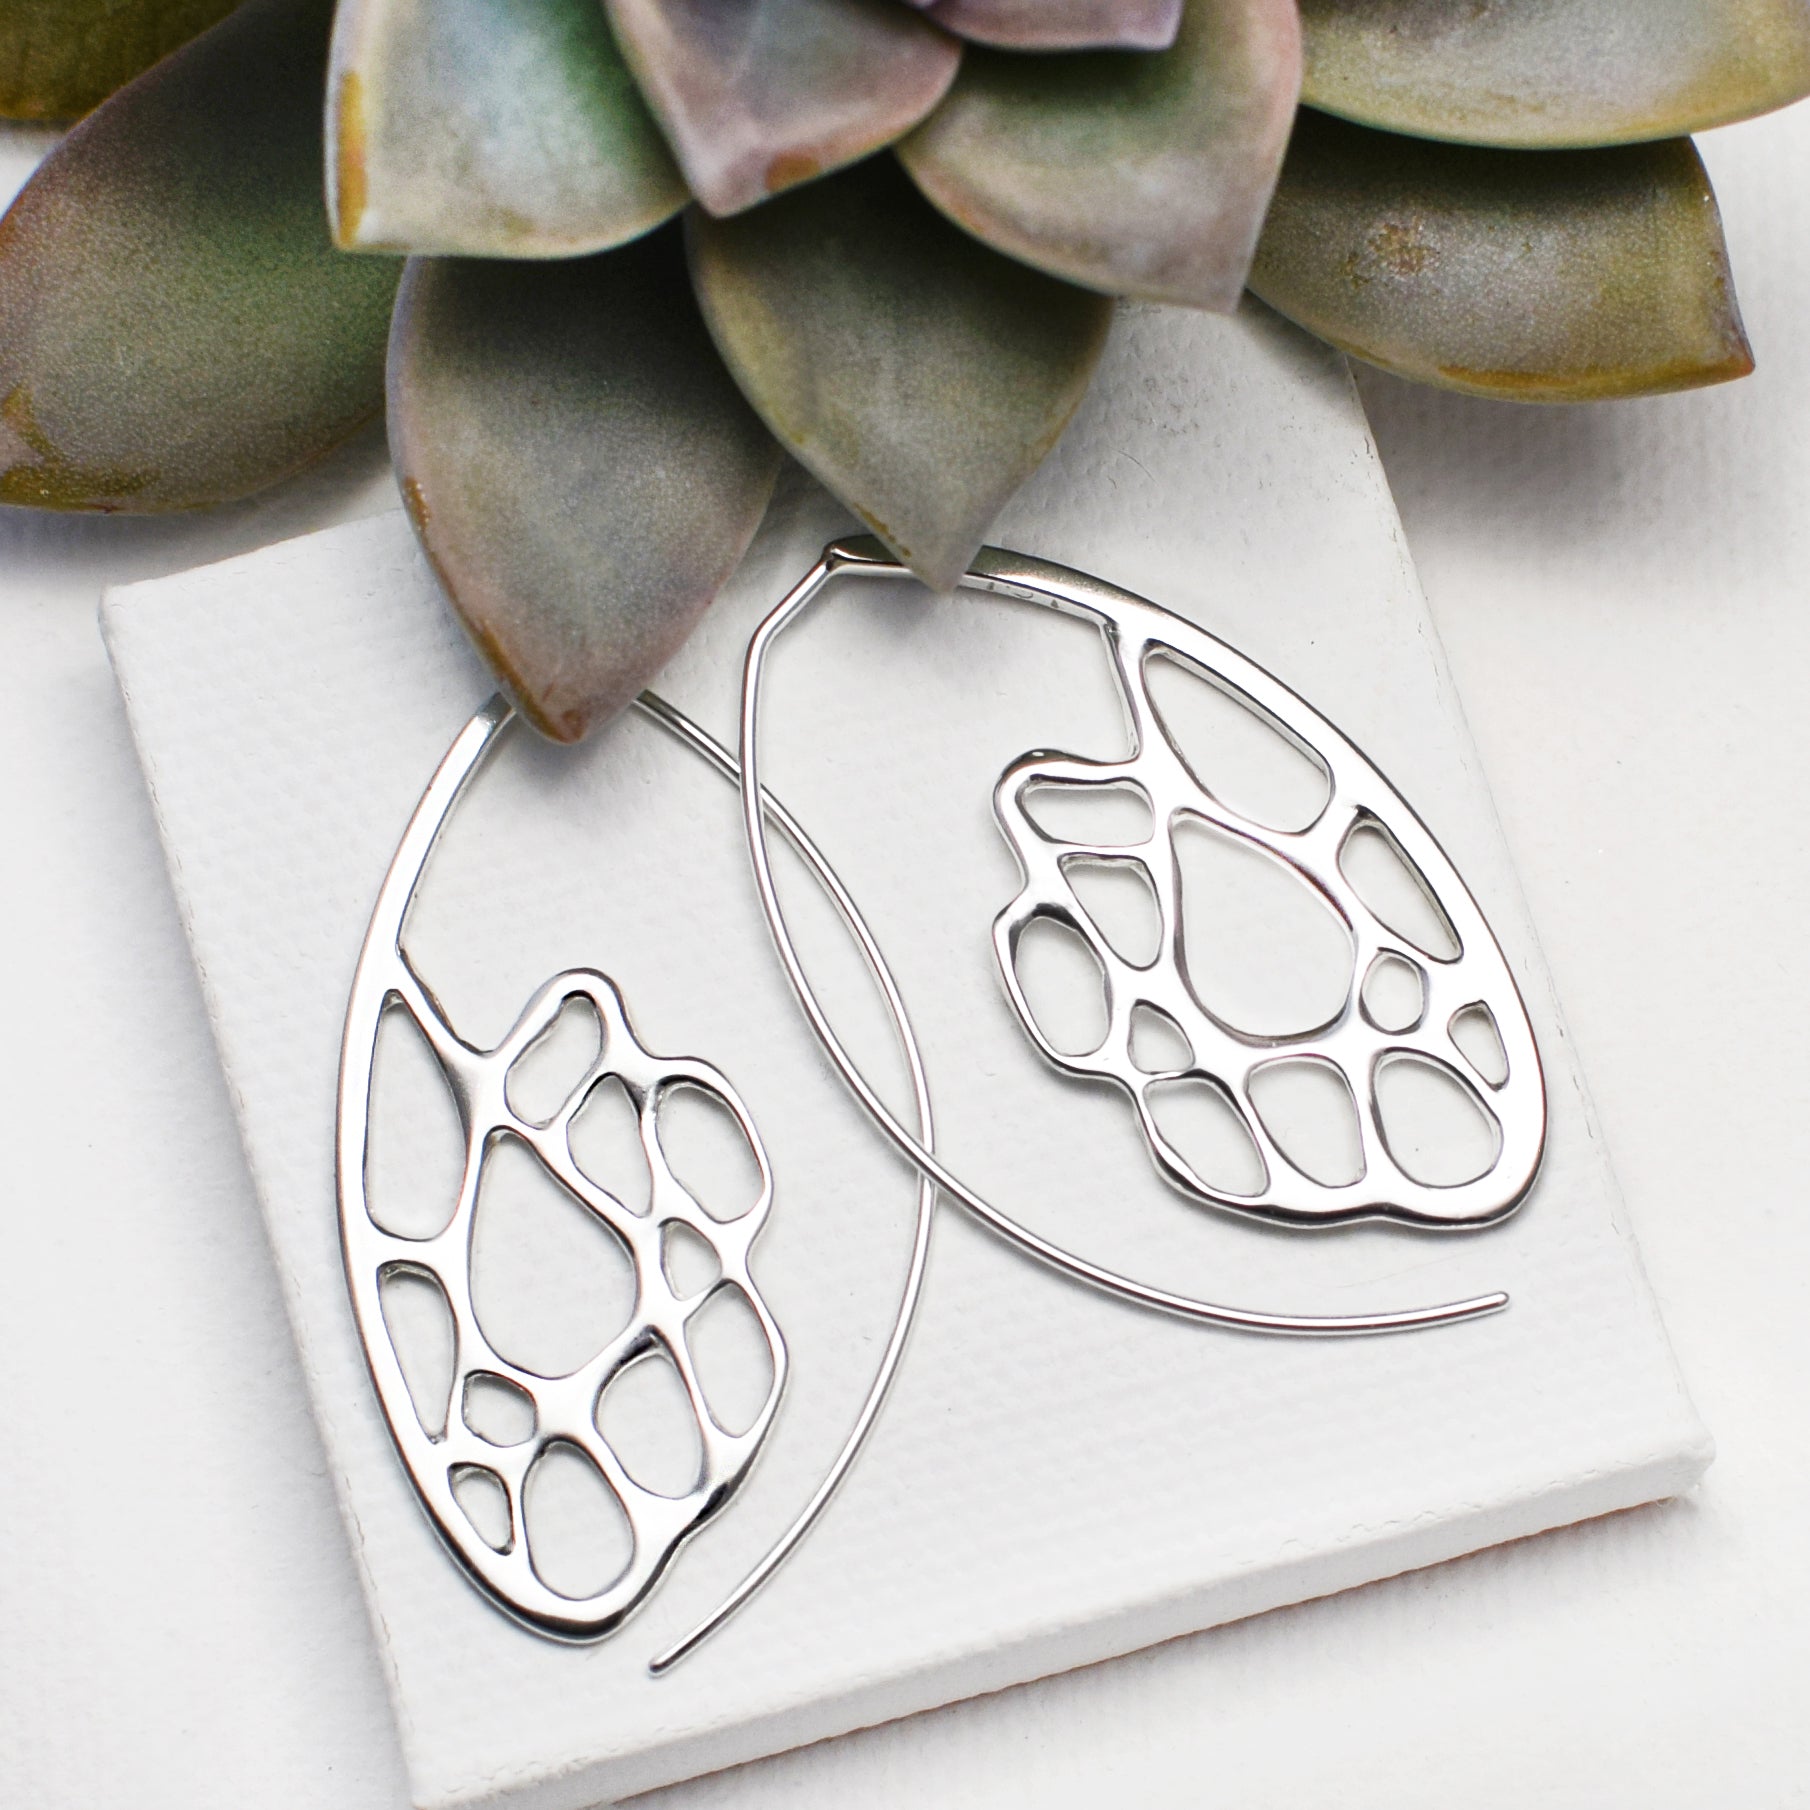 pair of cactus hoop earrings on white background